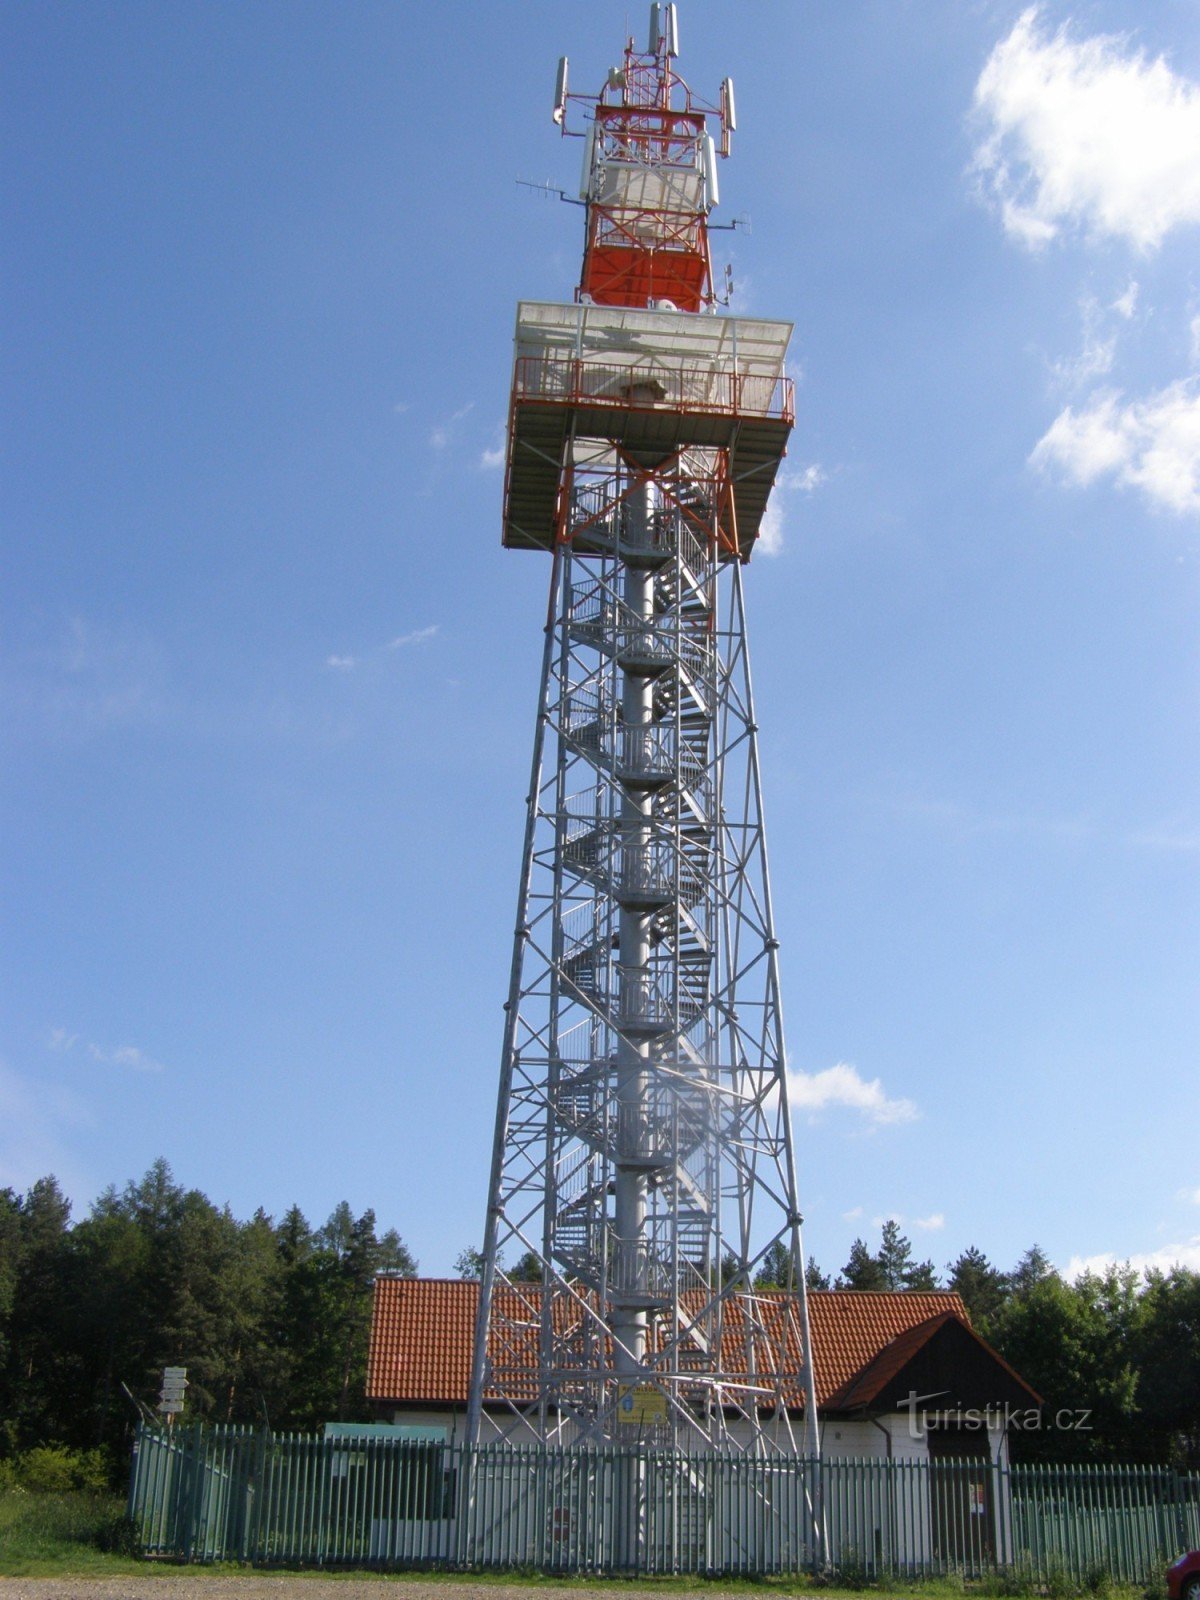 turistično križišče Razgledna točka Hořický Chlum